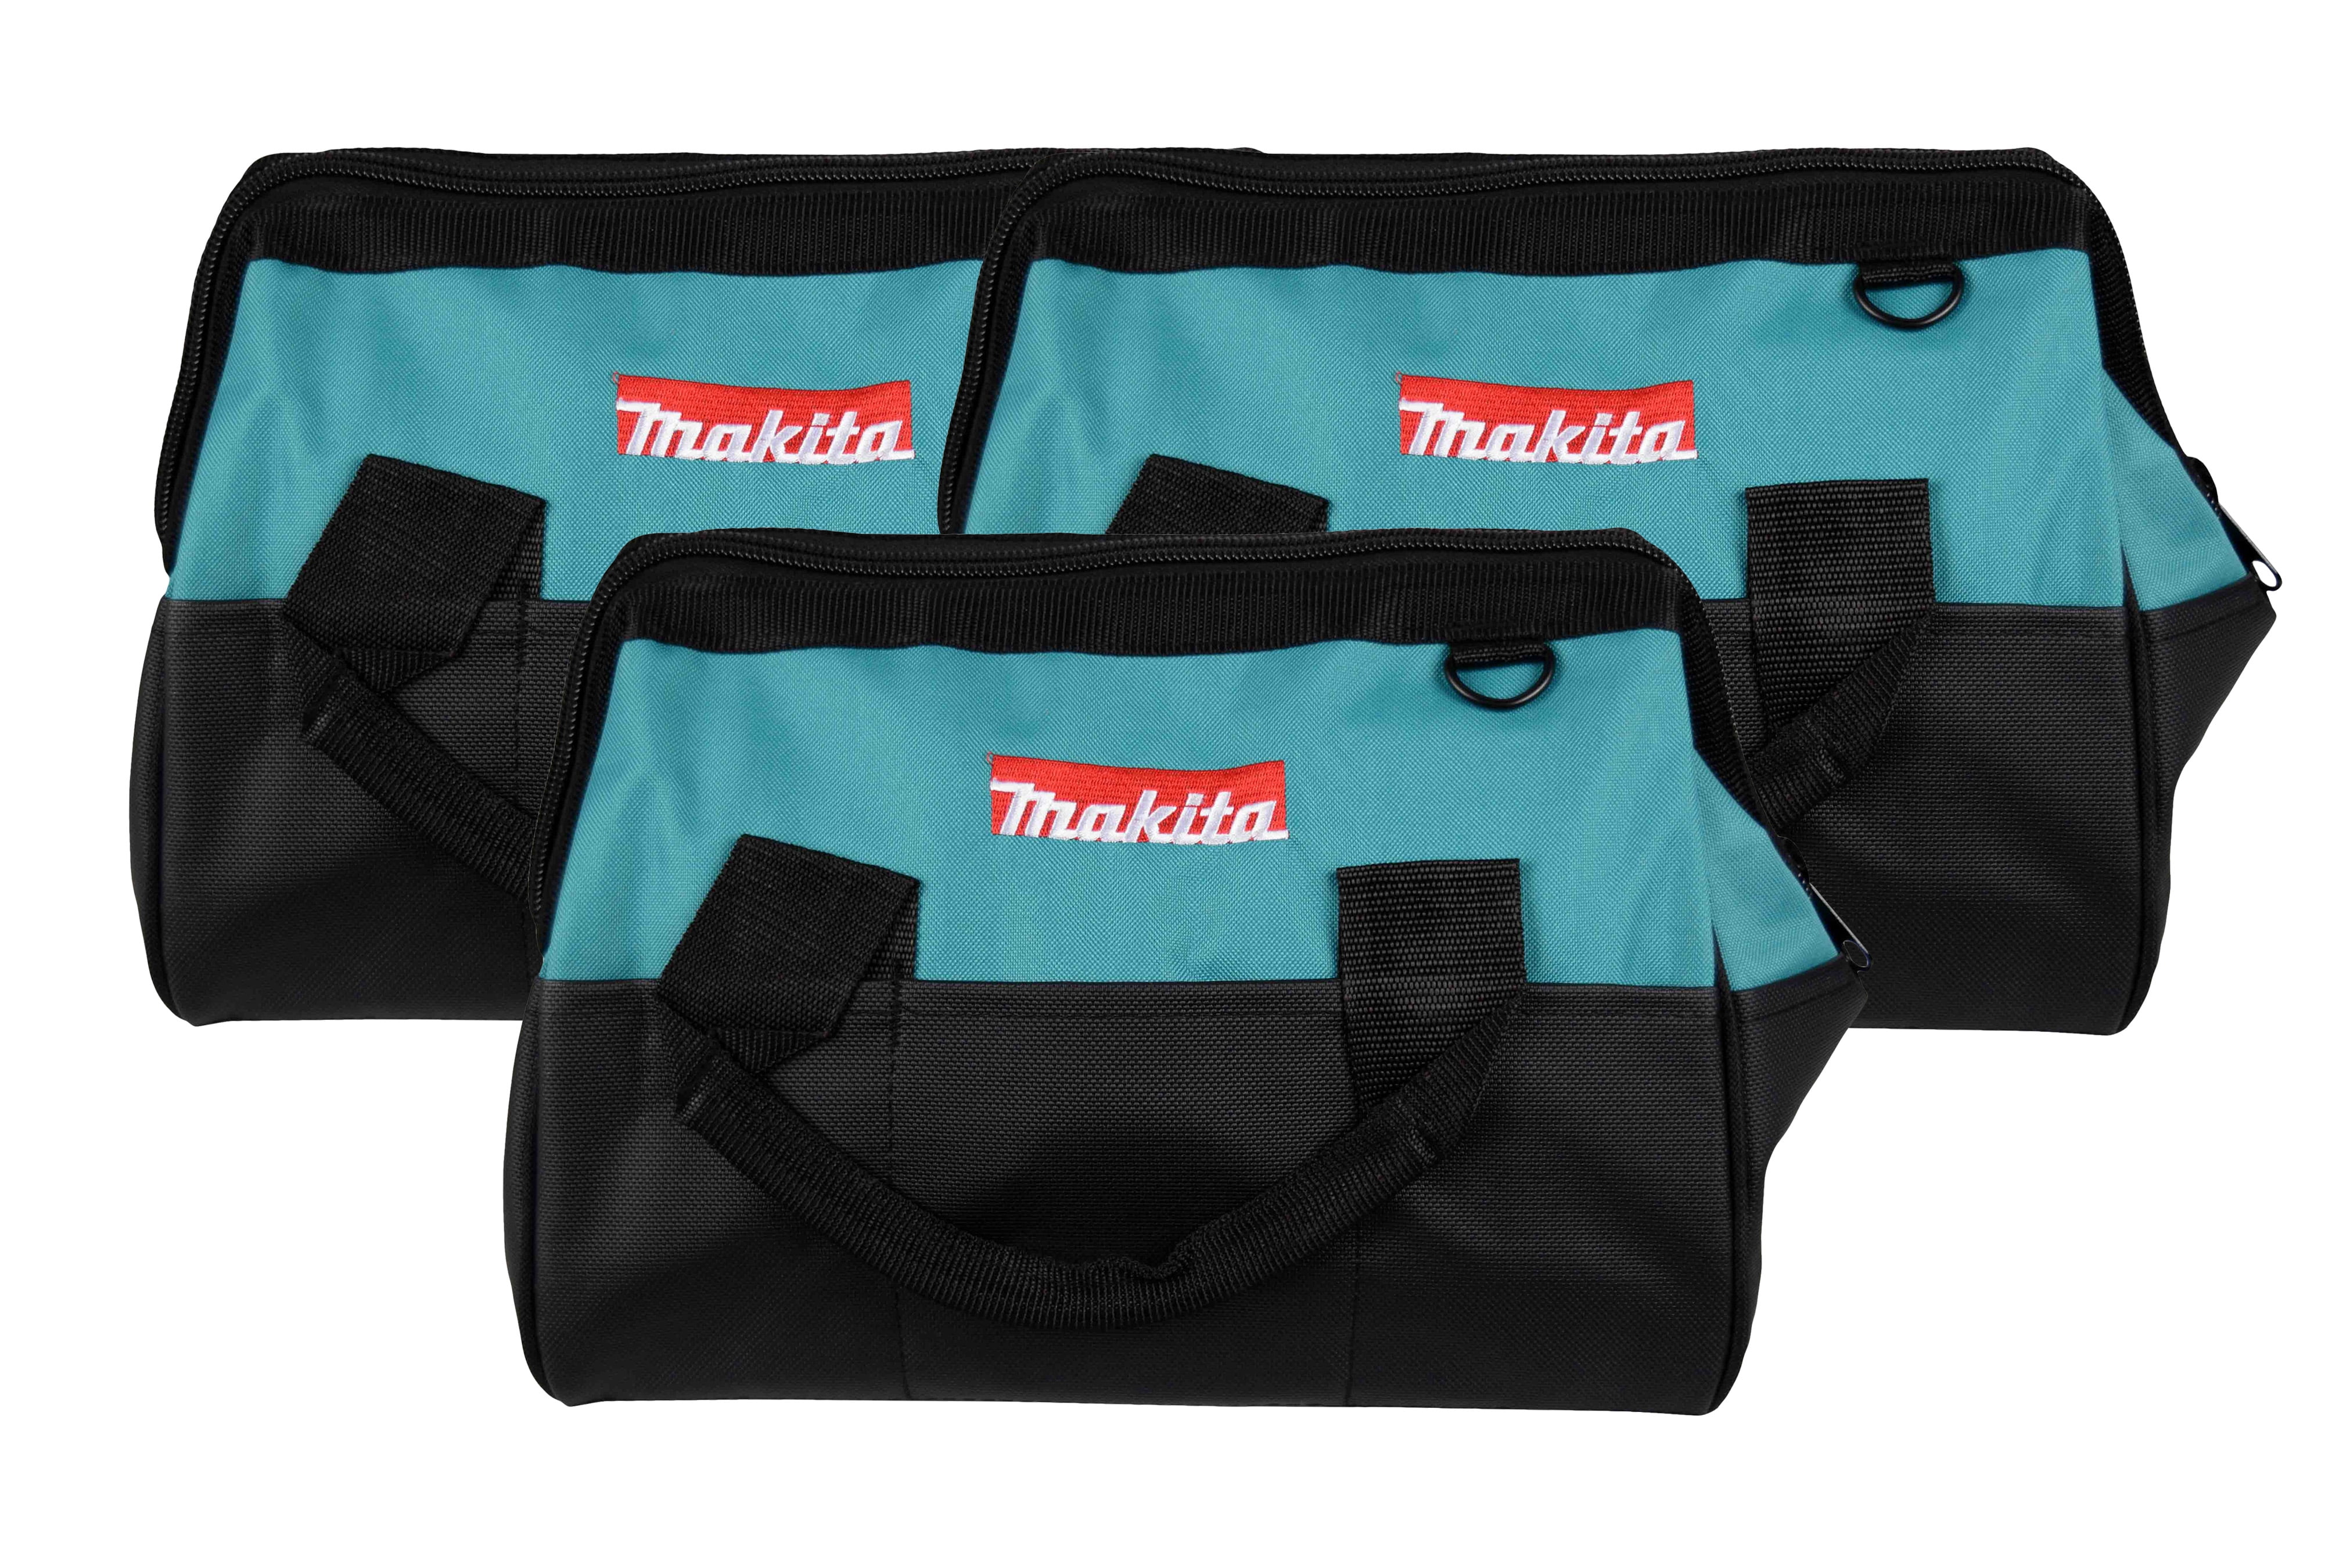 Makita BAG14Makita Tool Bag With Handles (5 Pack) - Walmart.com